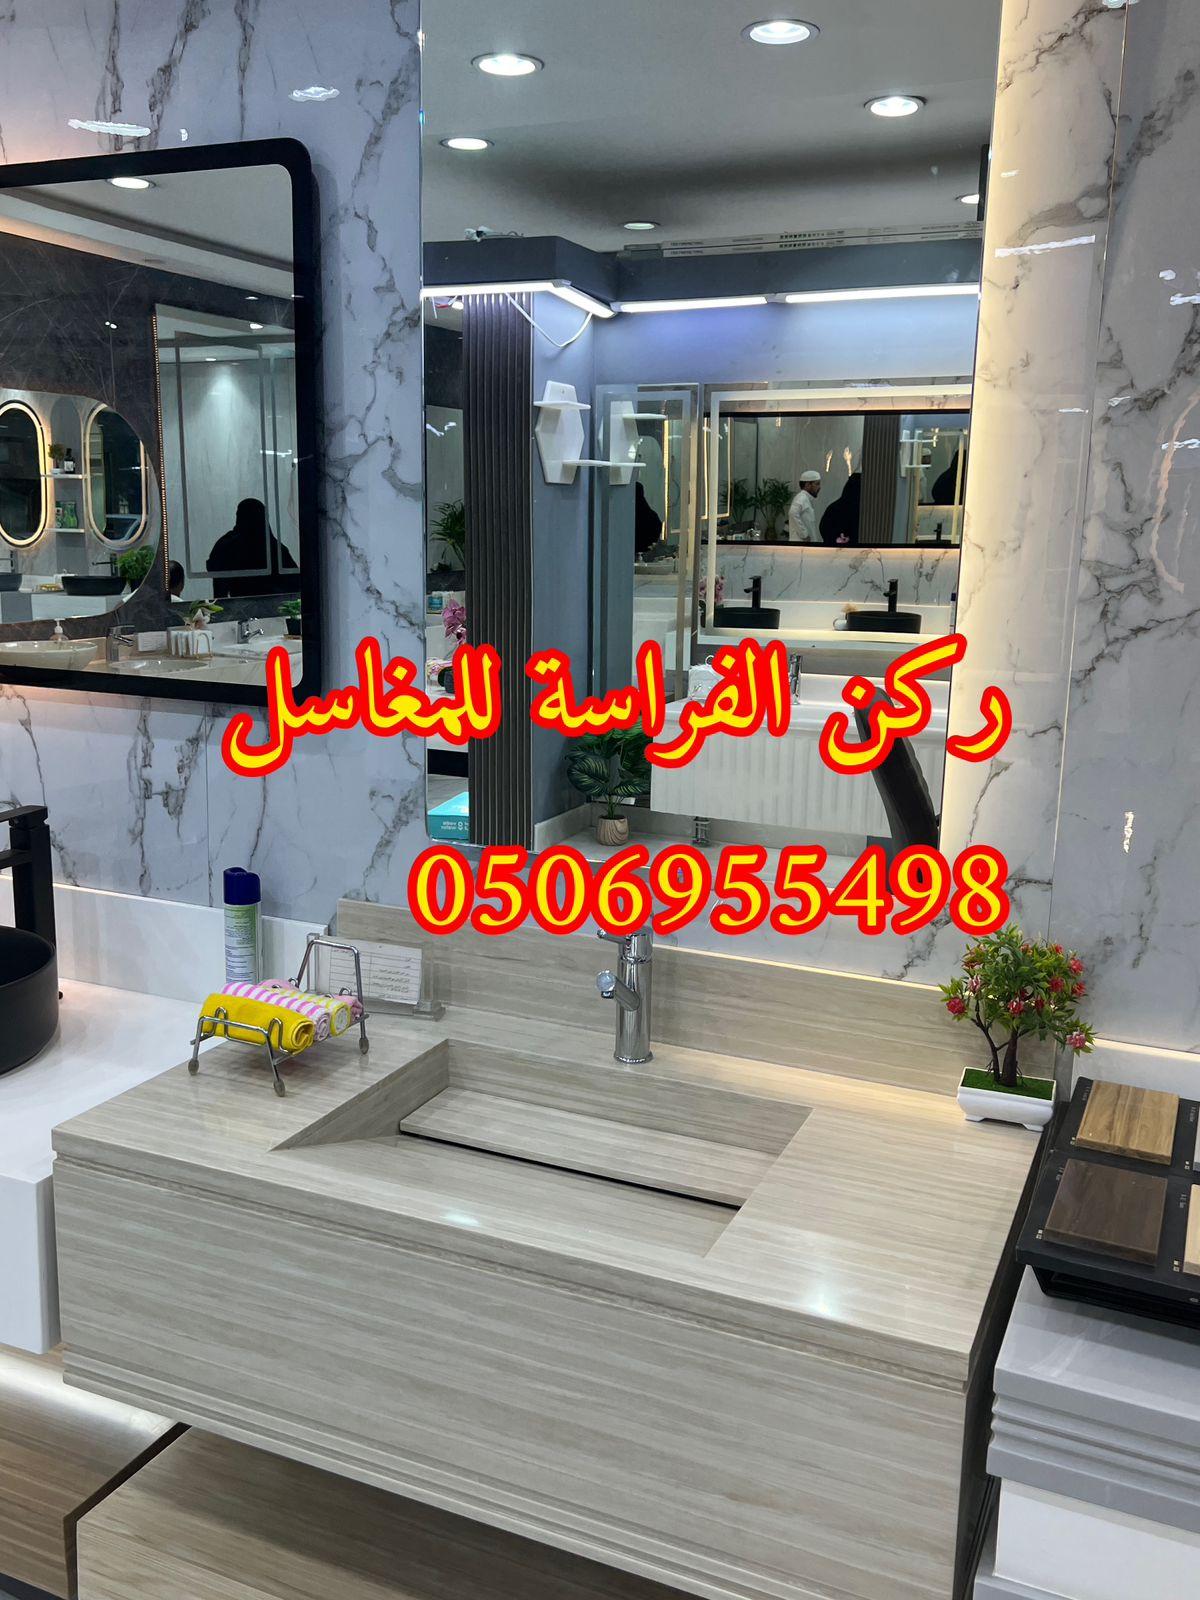 تفصيل ديكورات مغاسل حمامات رخام في الرياض,0506955498 662784414